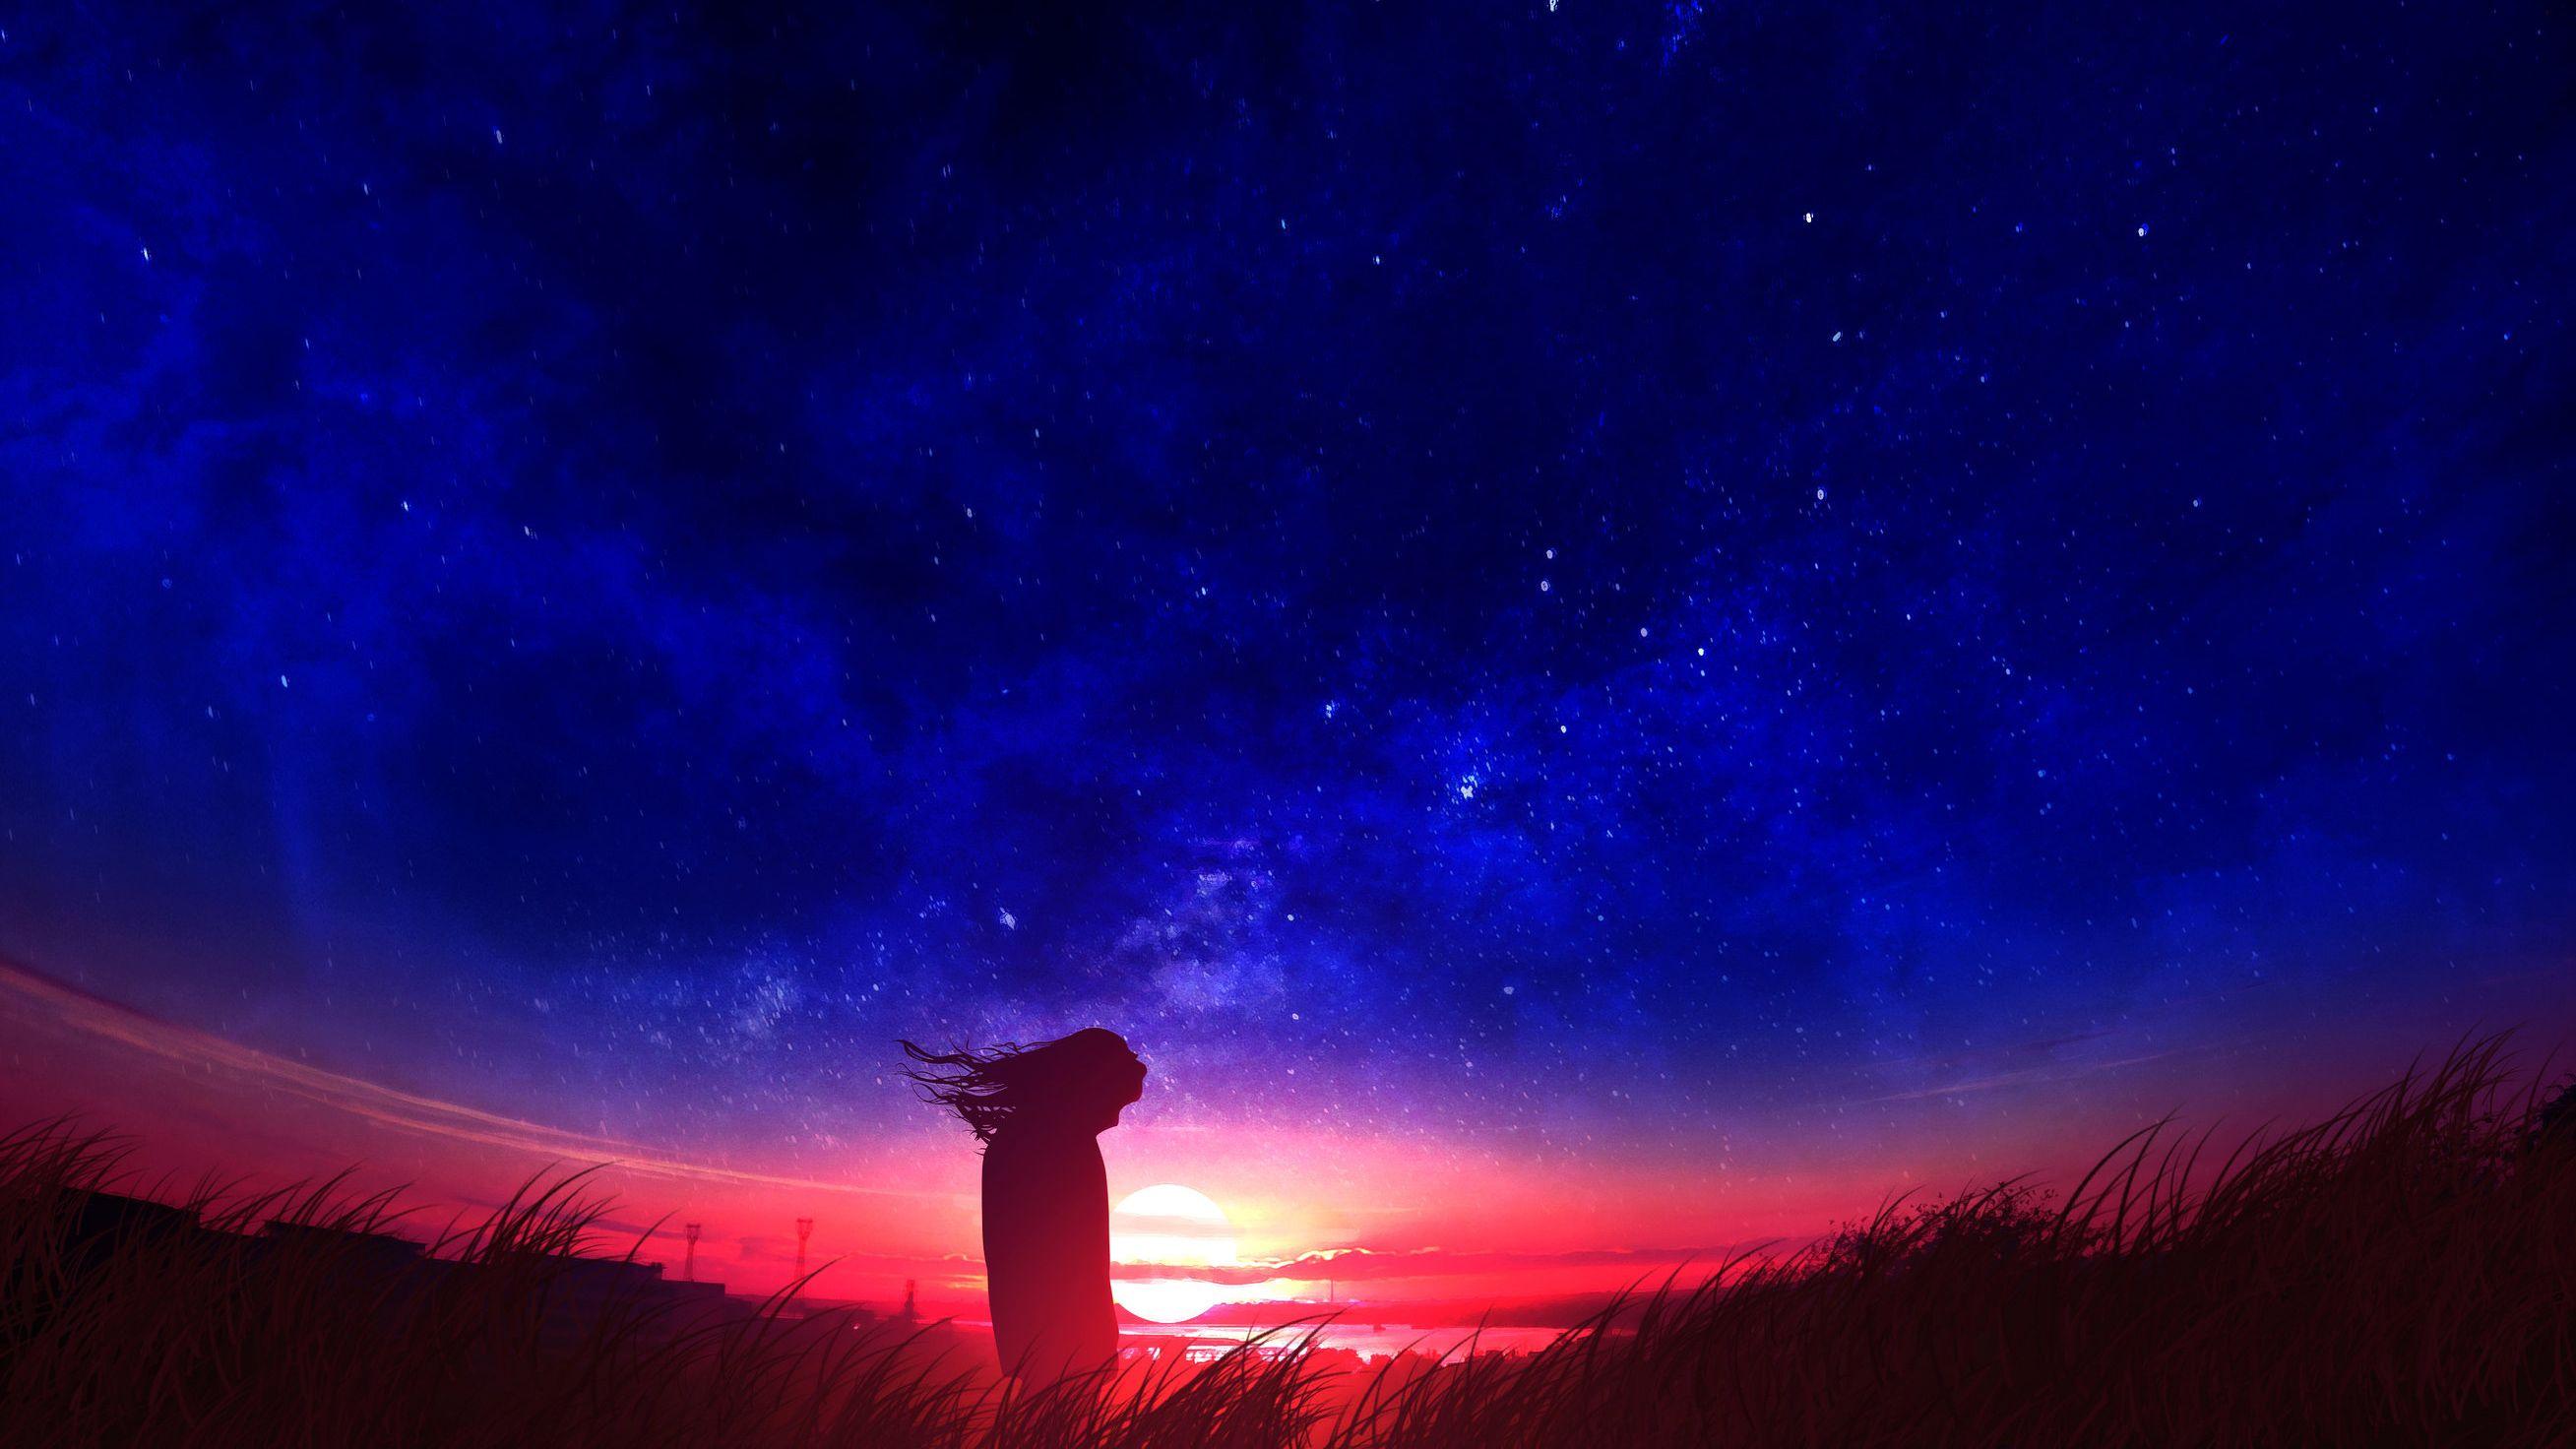 2617x1472 Anime Girl In Field Silhouette Sunset, HD Anime, Hình nền 4k, Hình ảnh, Bối cảnh, Hình ảnh và Hình ảnh